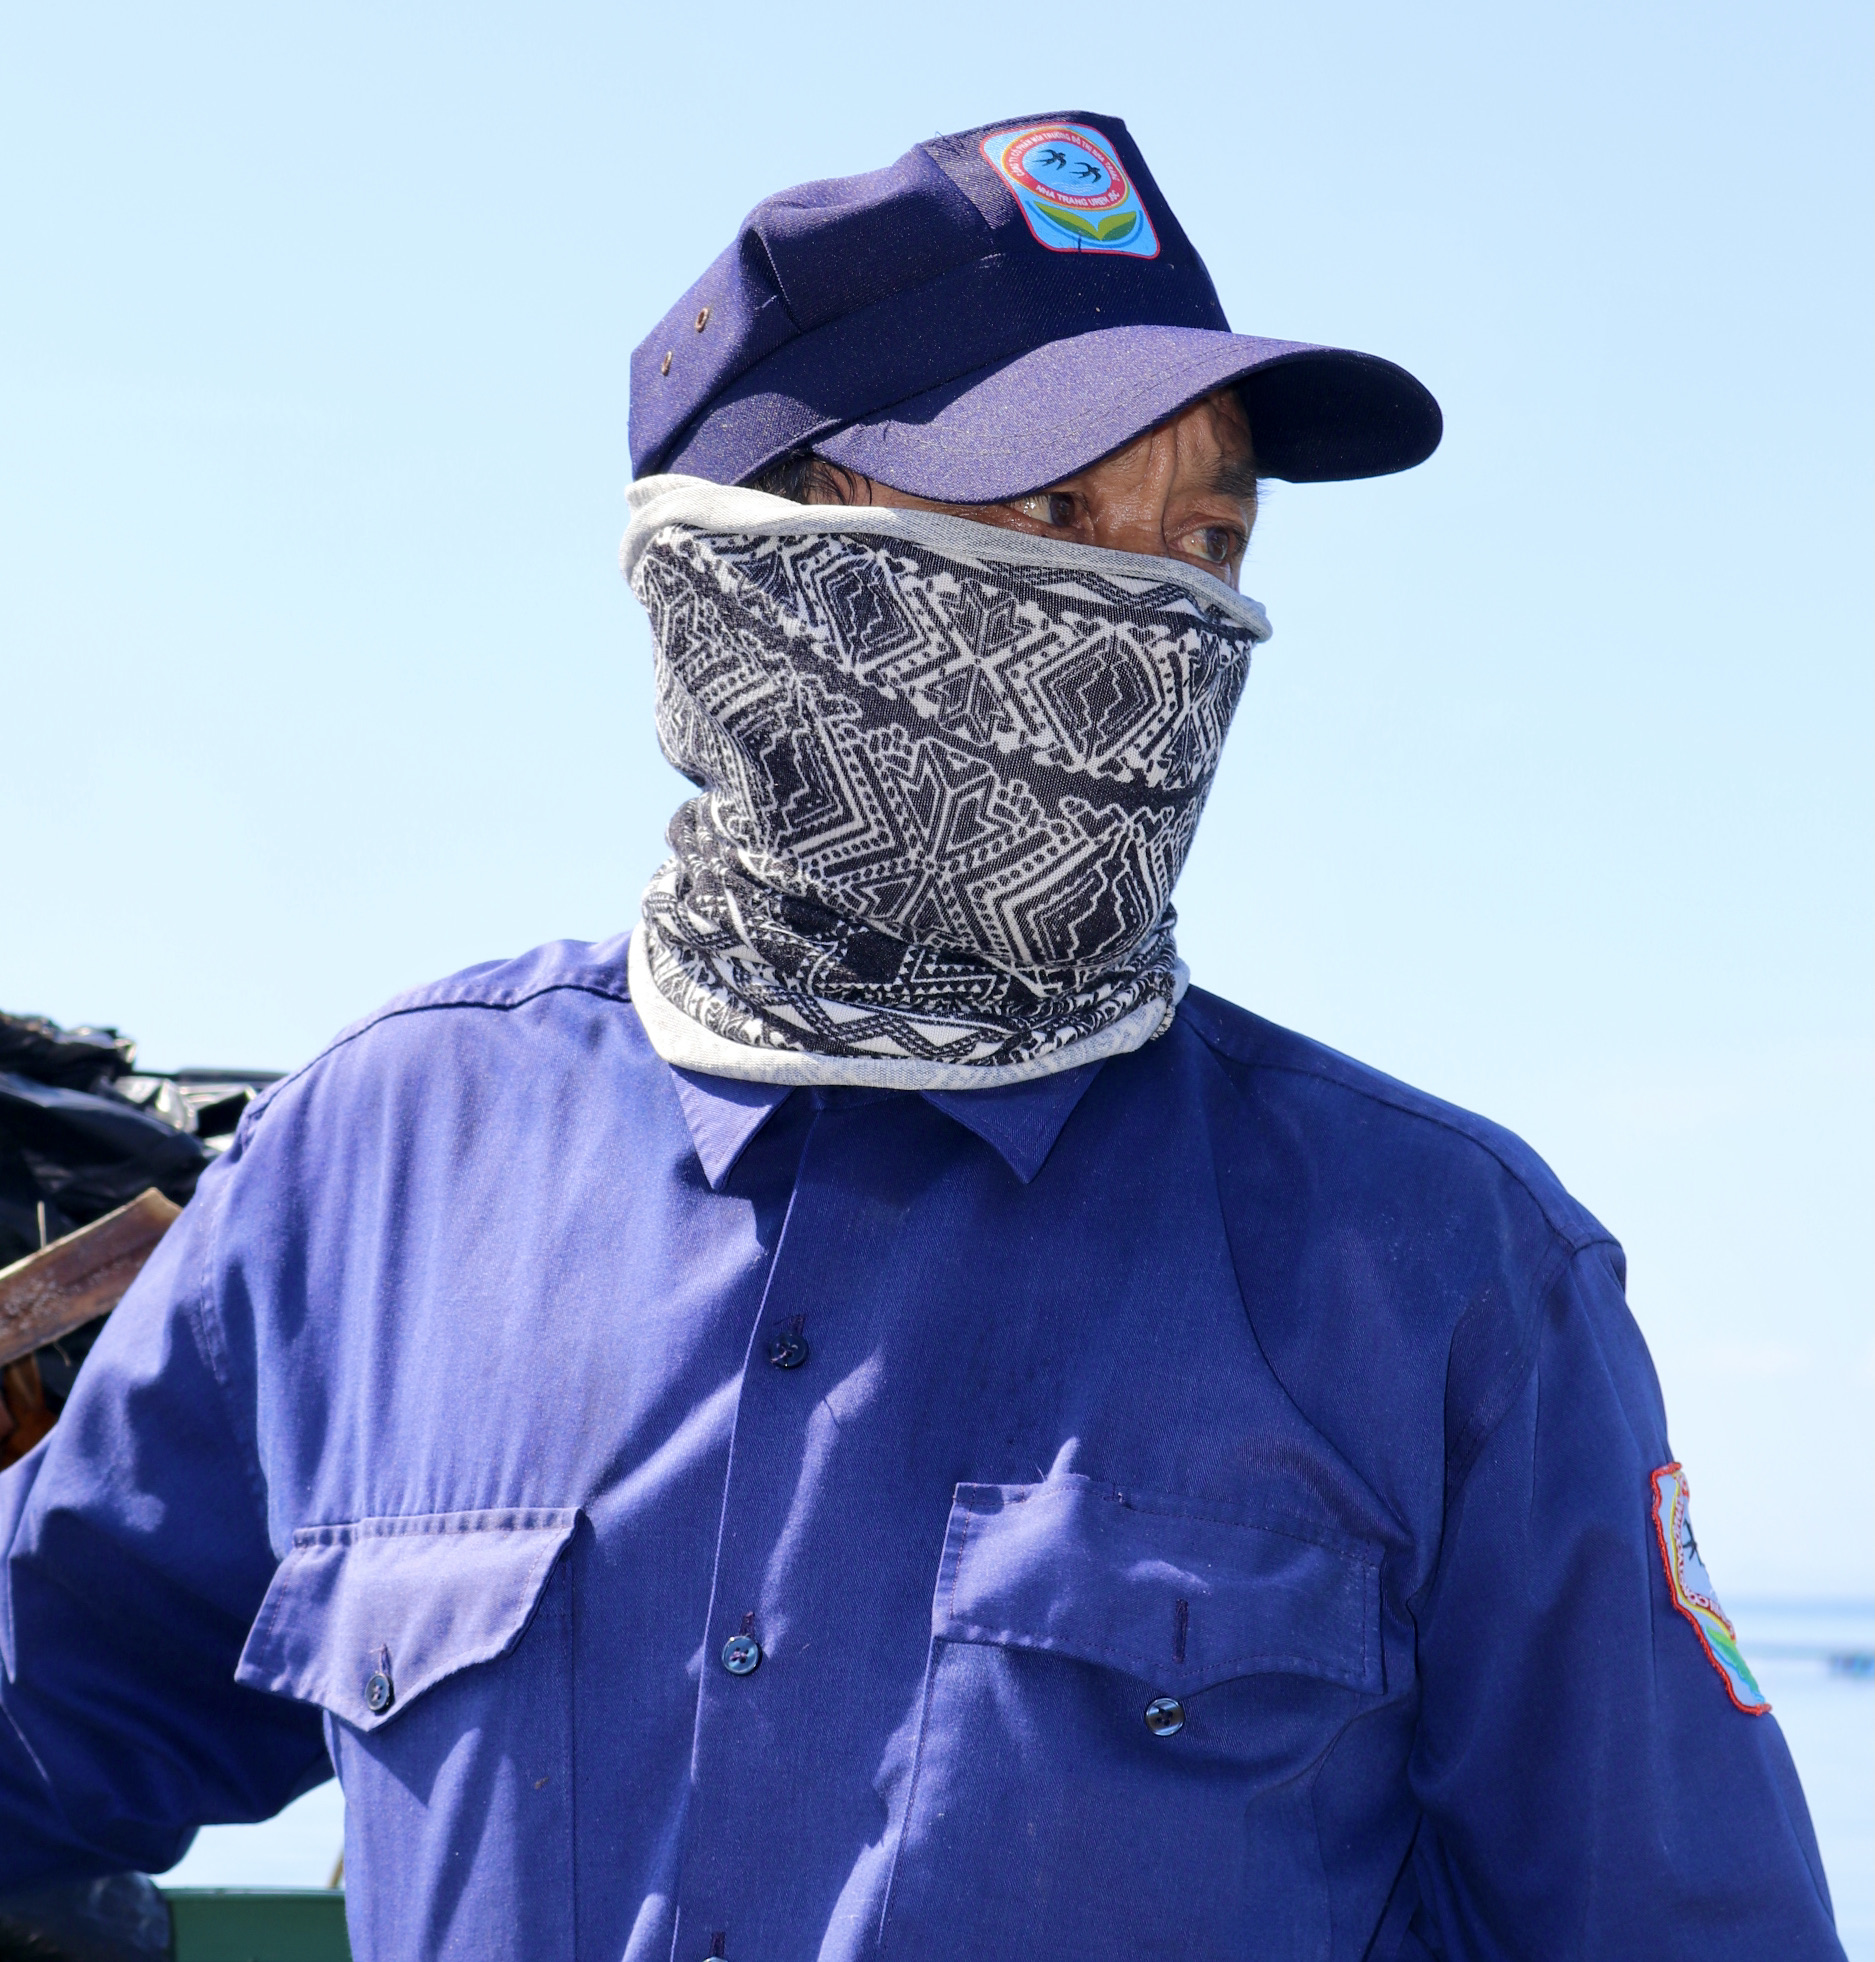 Ông Nguyễn Khắc Tân (57 tuổi, một công nhân) bịt kín mặt khi thu gom rác trên biển.